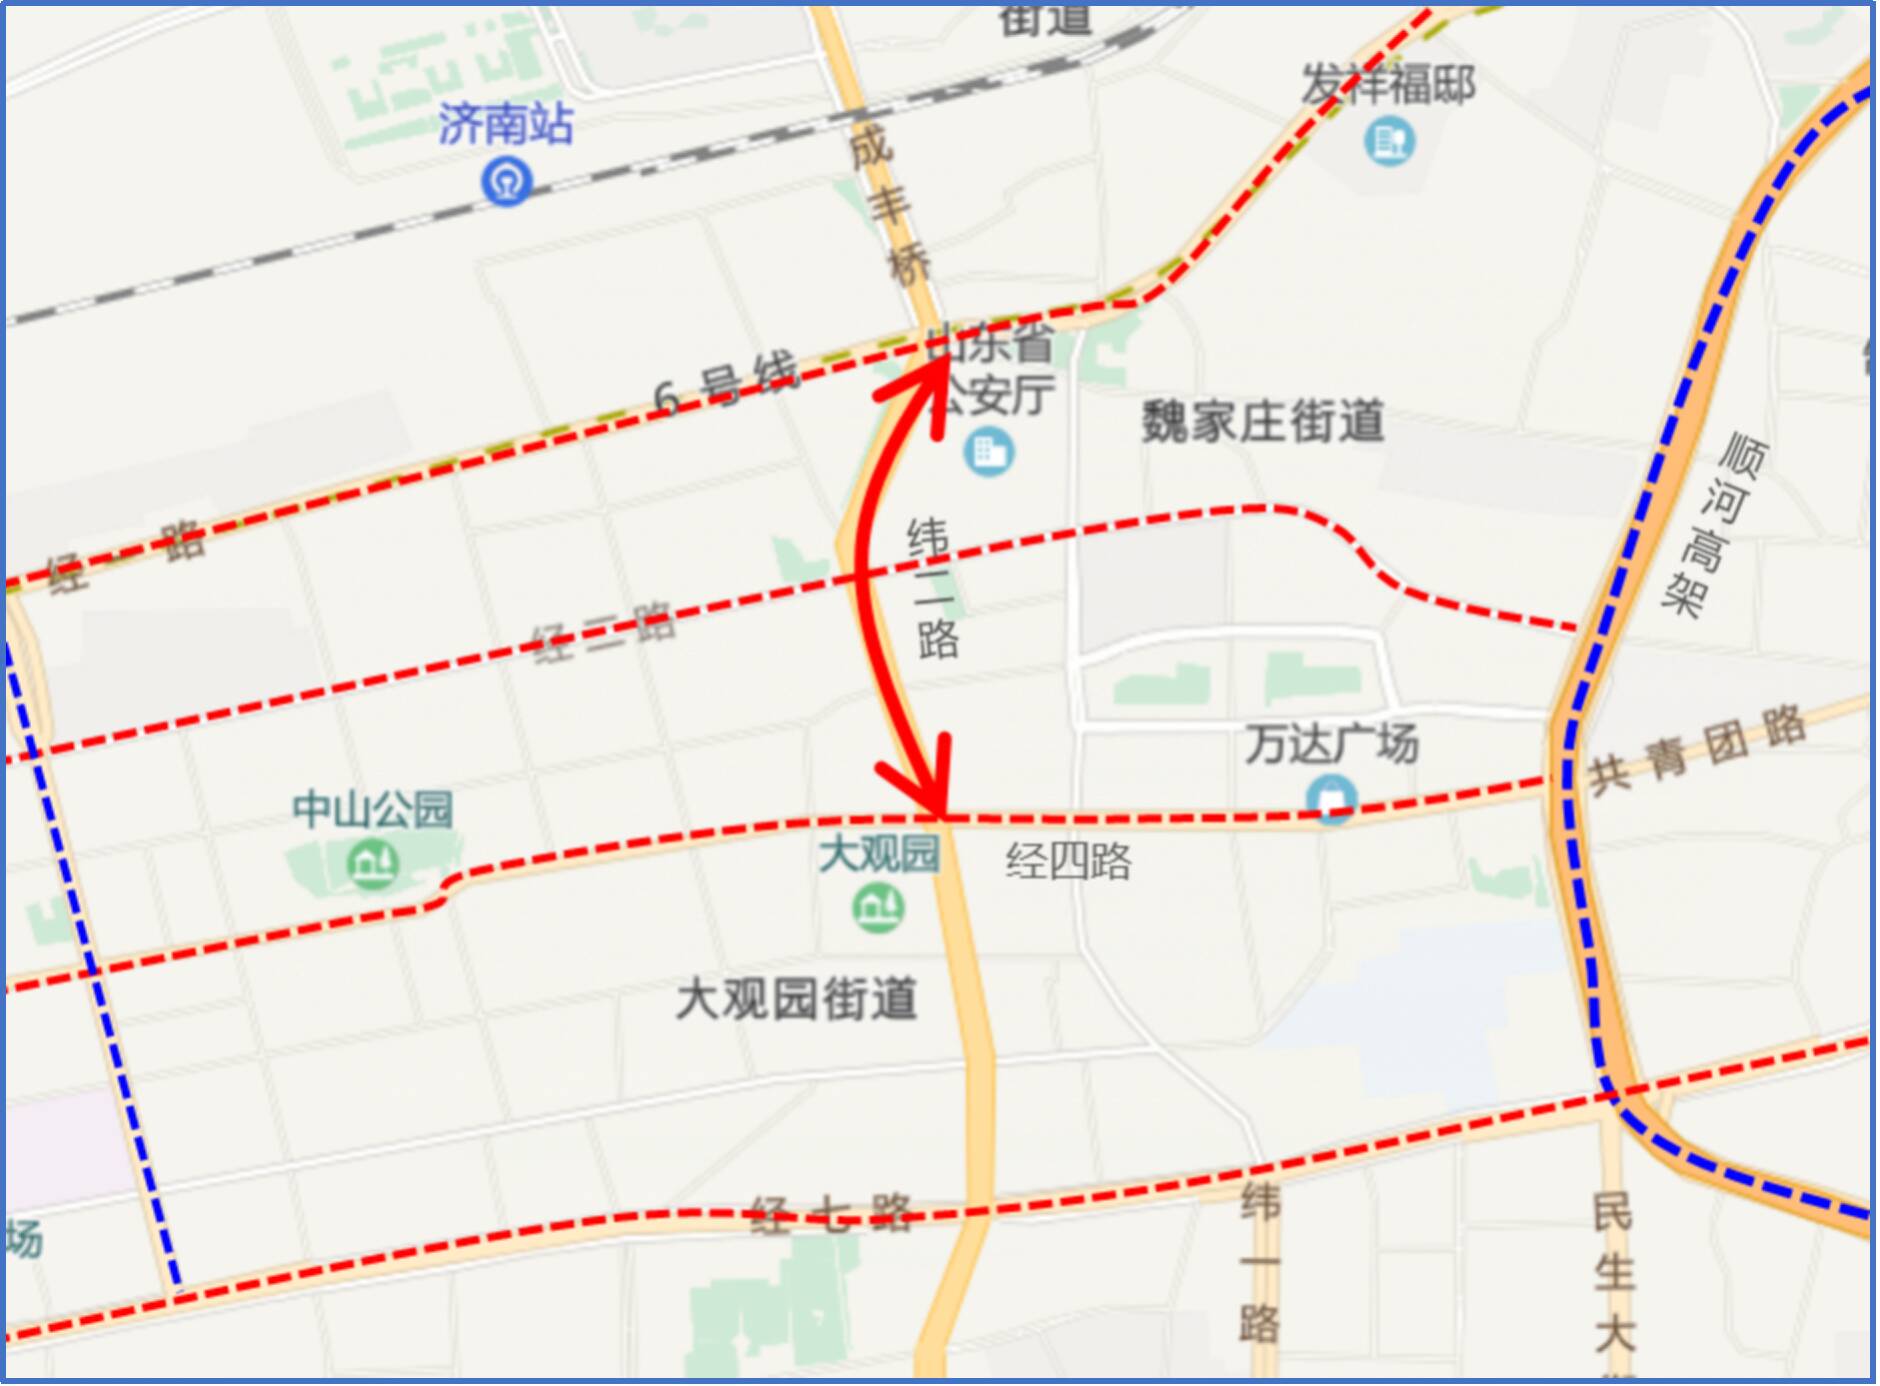 10月11日起 济南这条路的部分公交车道位置调整到最外侧